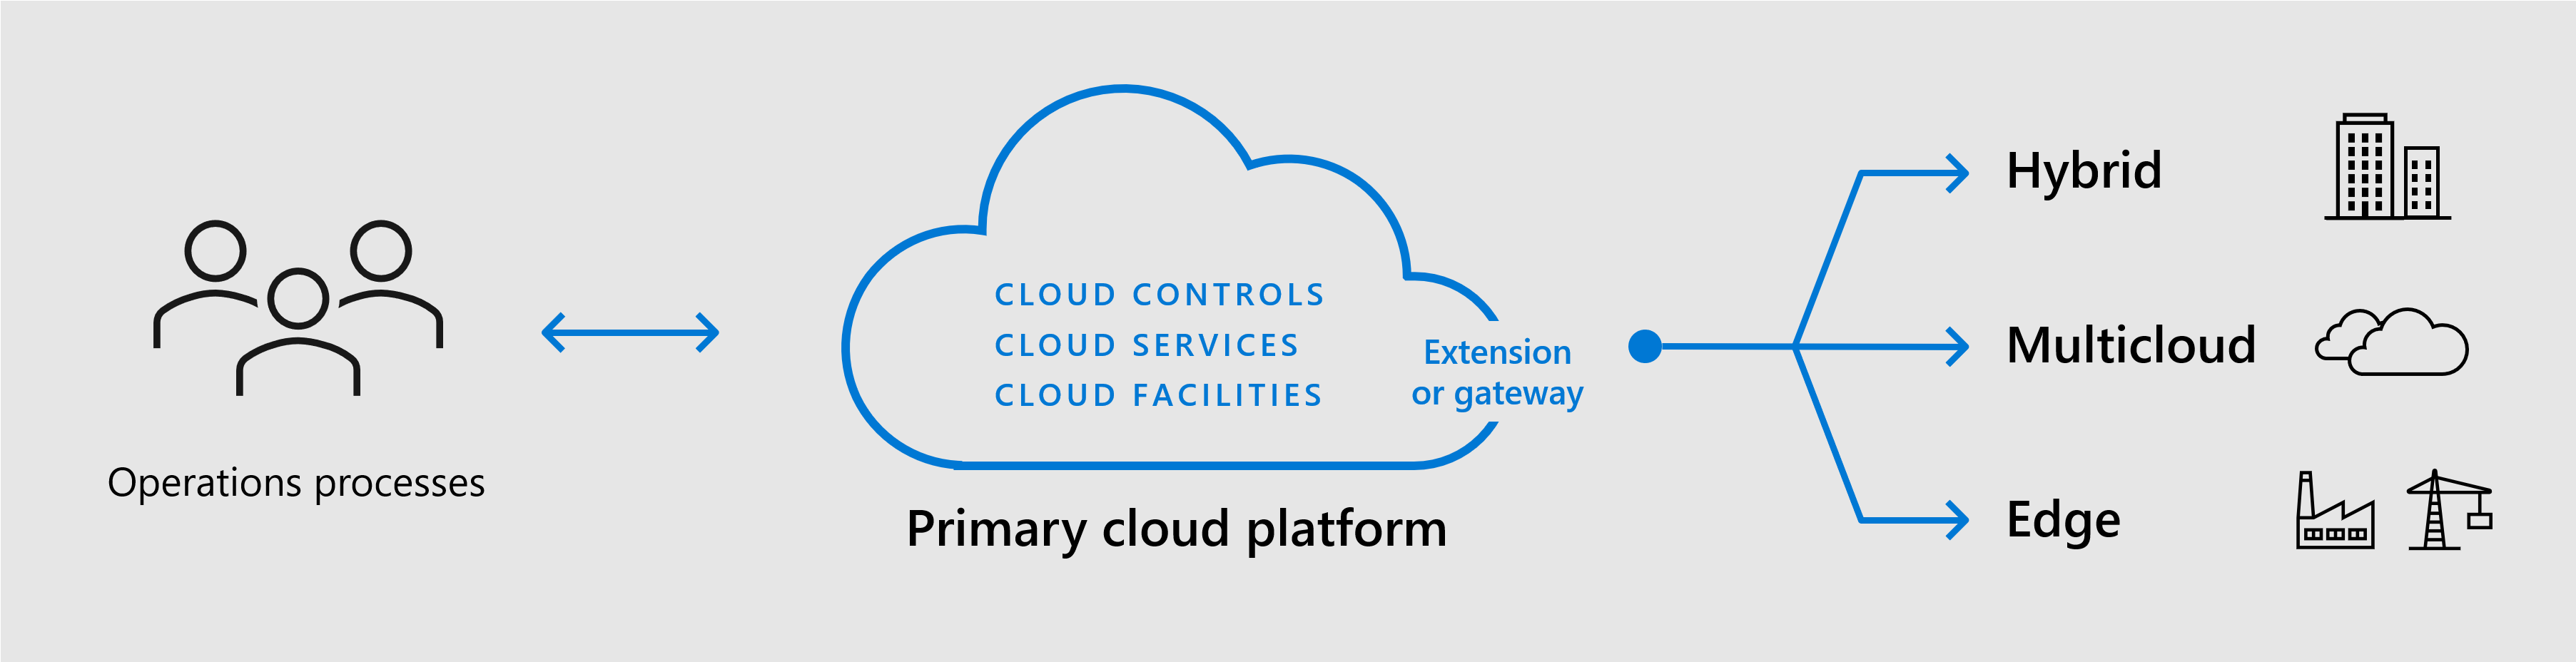 Diagramme montrant comment des opérations unifiées étendent les contrôles cloud aux déploiements hybrides, multiclouds et périphériques.